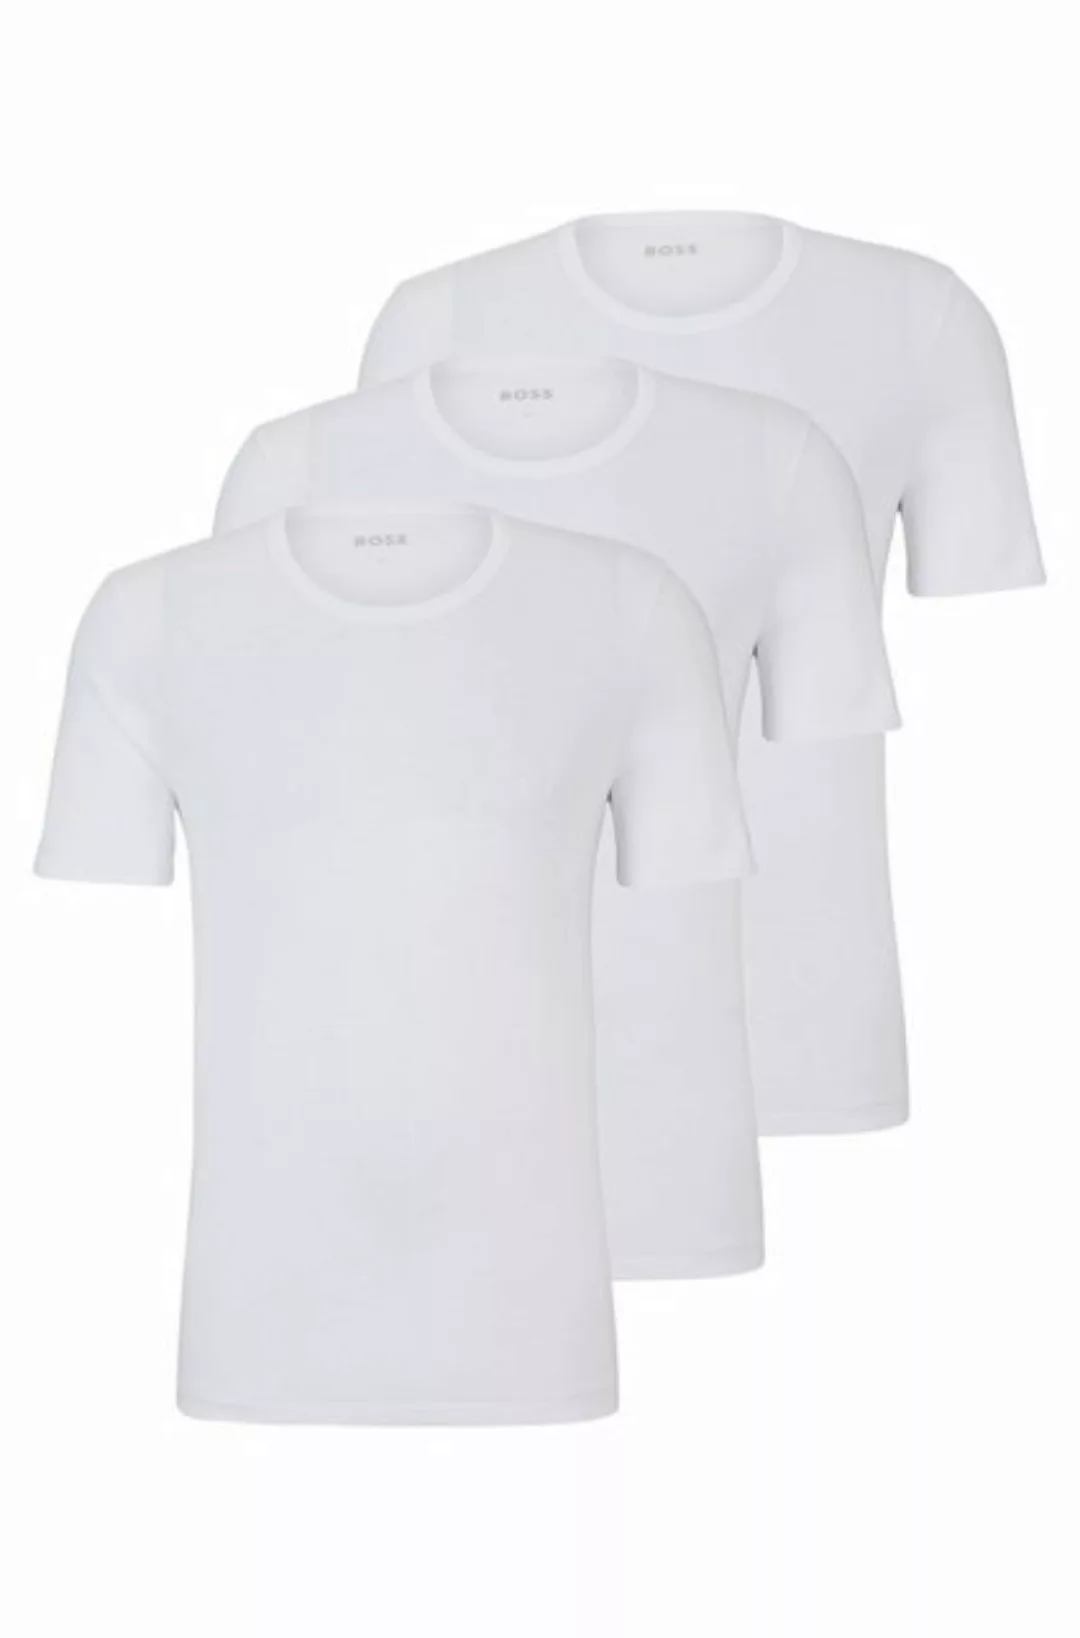 BOSS T-Shirt BOSS Herren T-Shirts 3 Pack,Kurzarm Shirts Crew-Neck, Farbe:We günstig online kaufen